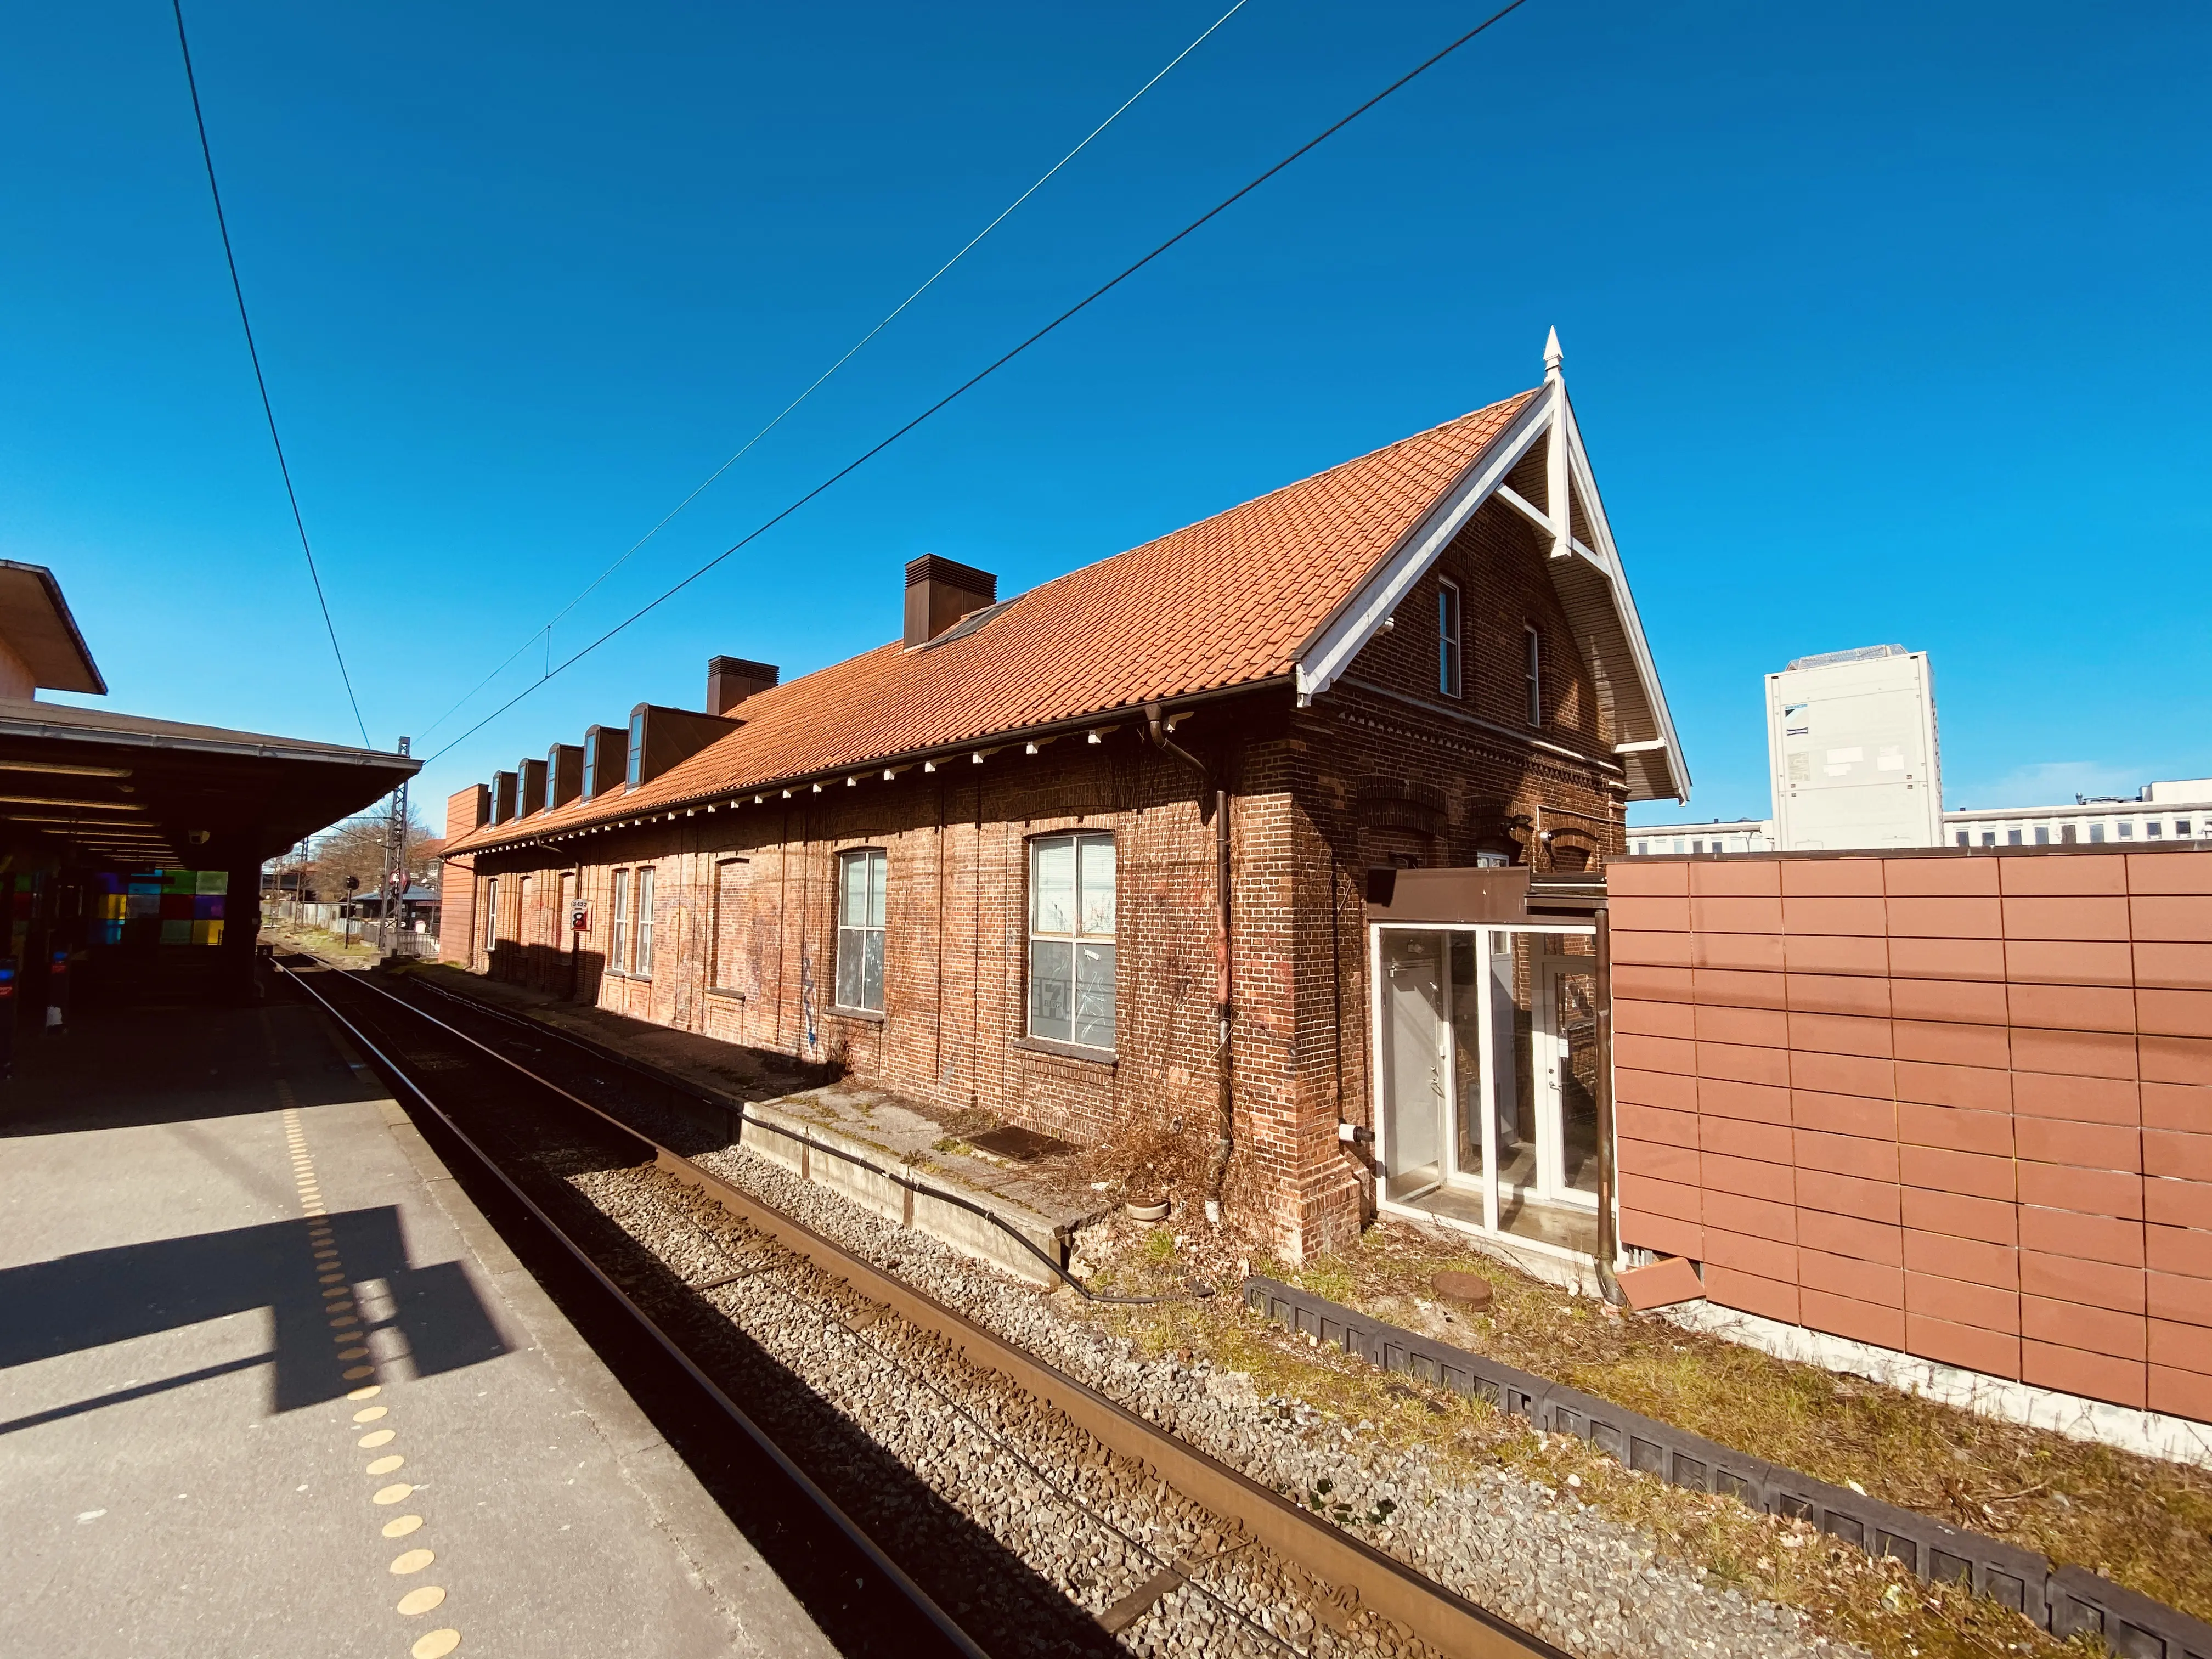 Herlev Station.